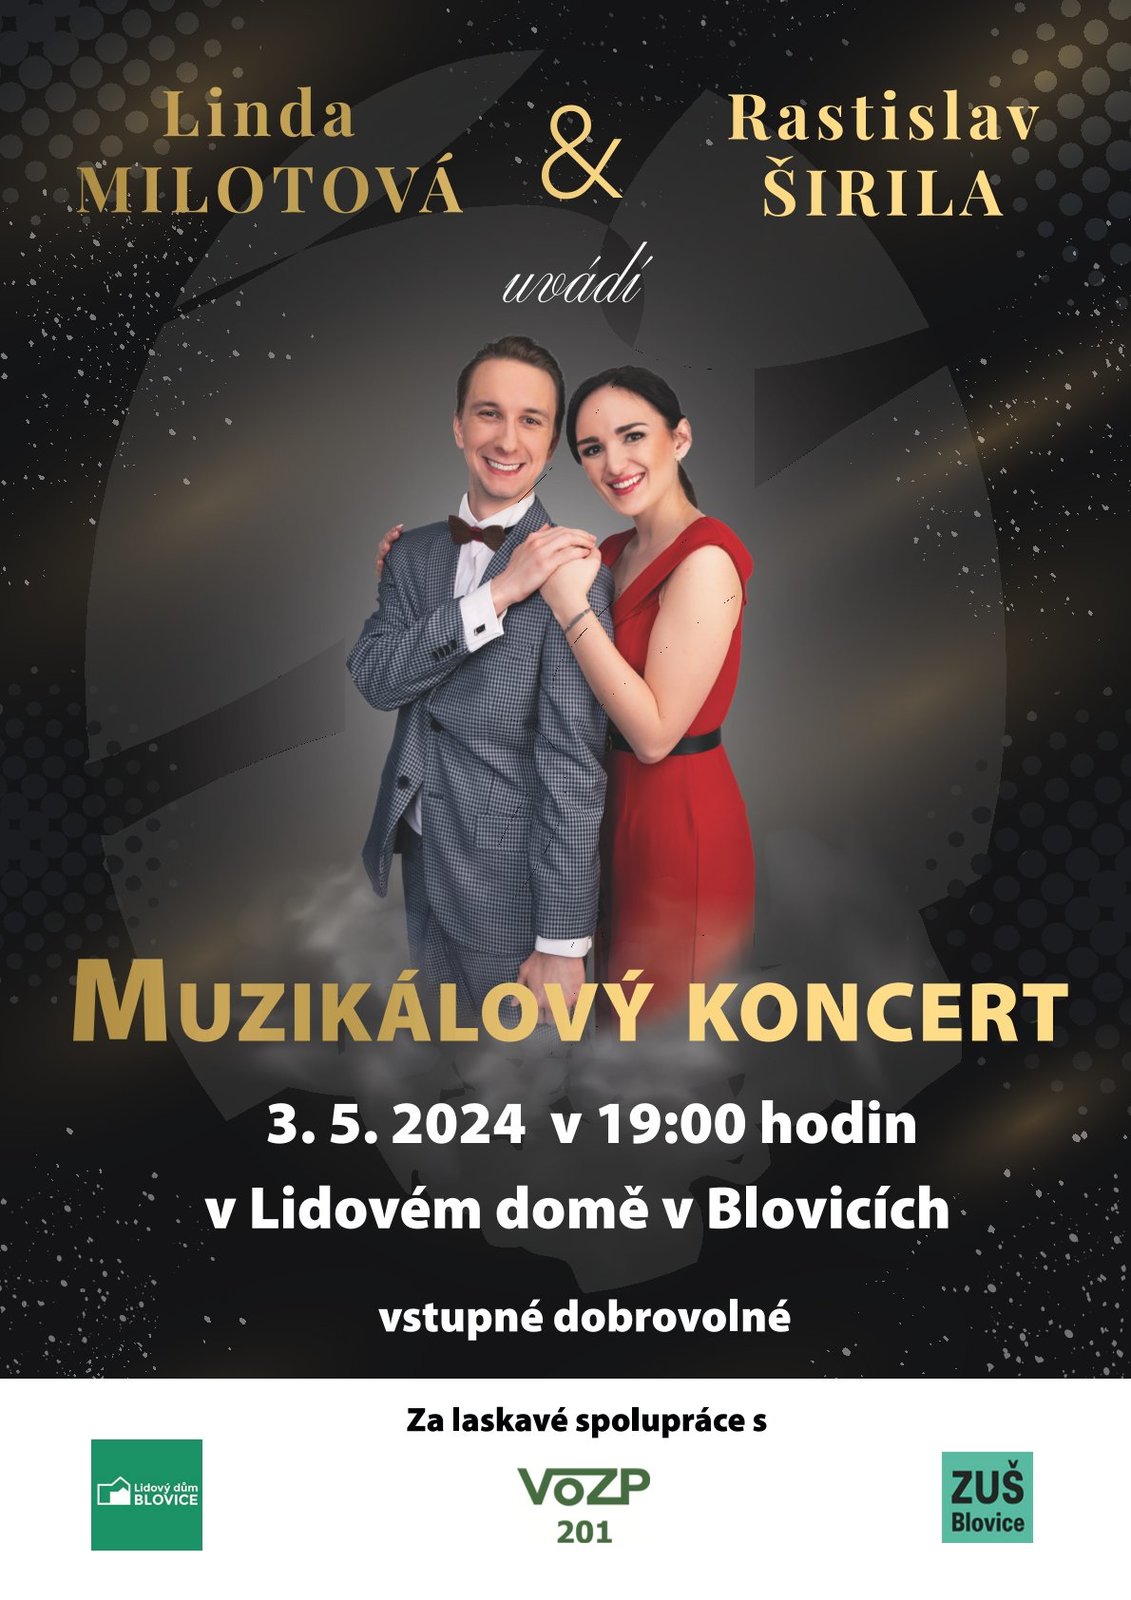 Muzikálový koncert - Linda Milotová a Rastislav Širila.jpg